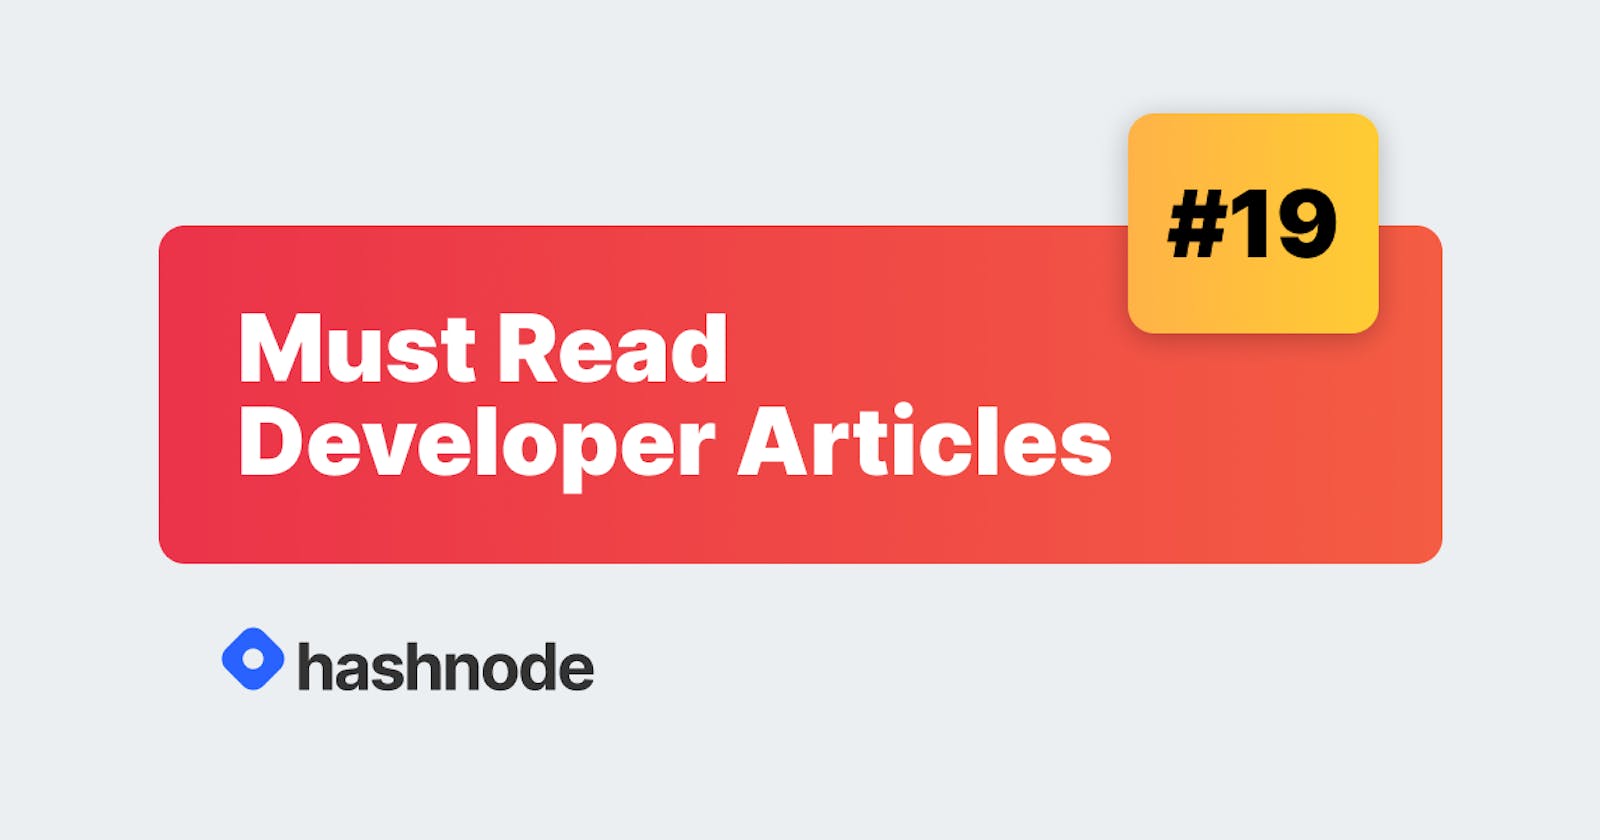 Must Read Developer Articles on Hashnode - #19